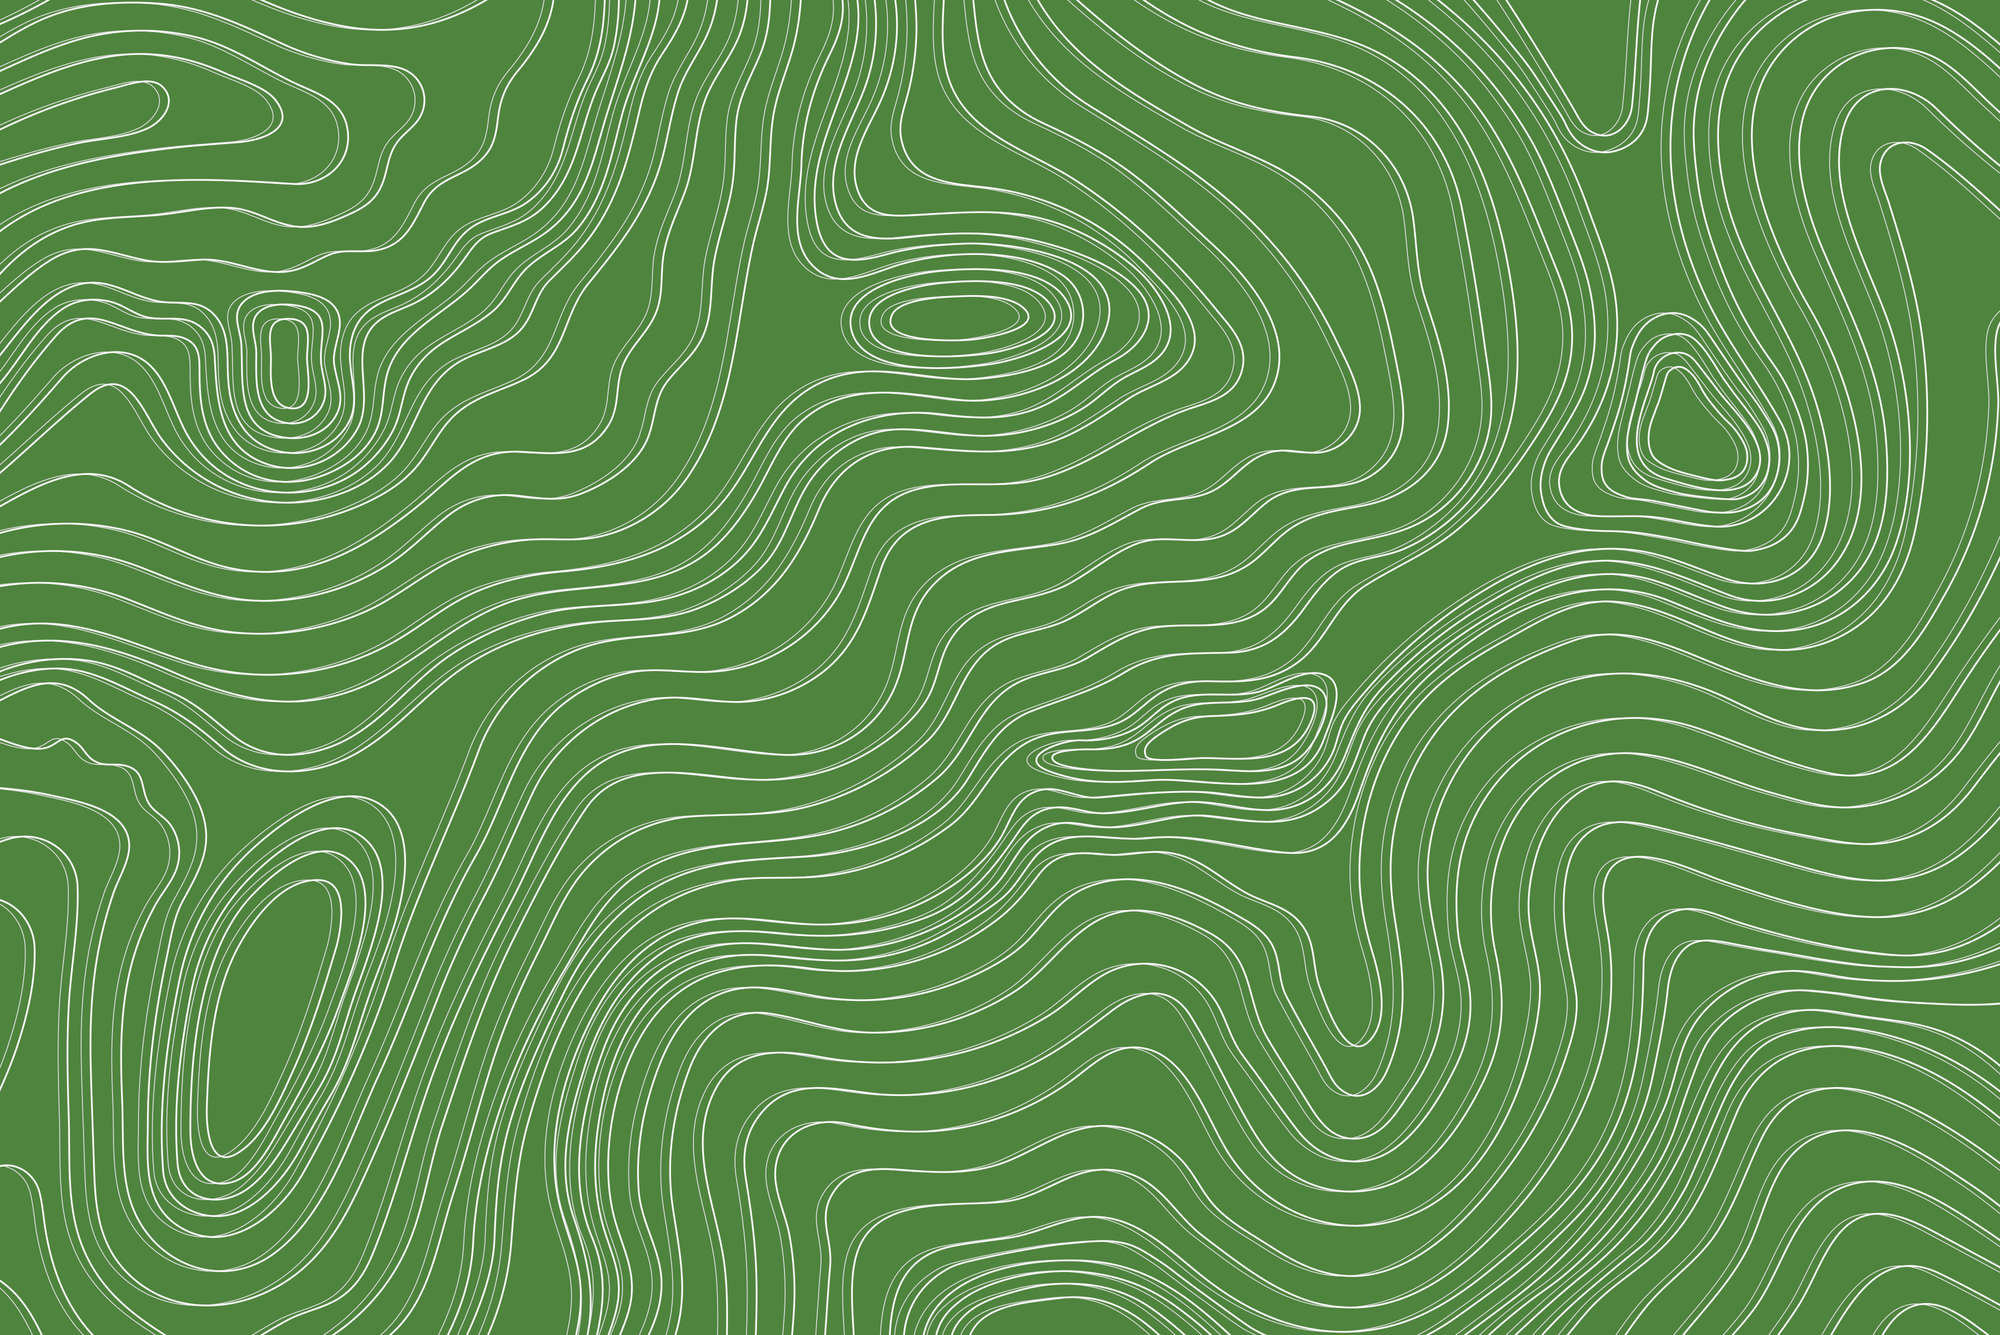             Papel pintado de diseño con olas y círculos en color verde sobre tejido no tejido texturizado
        